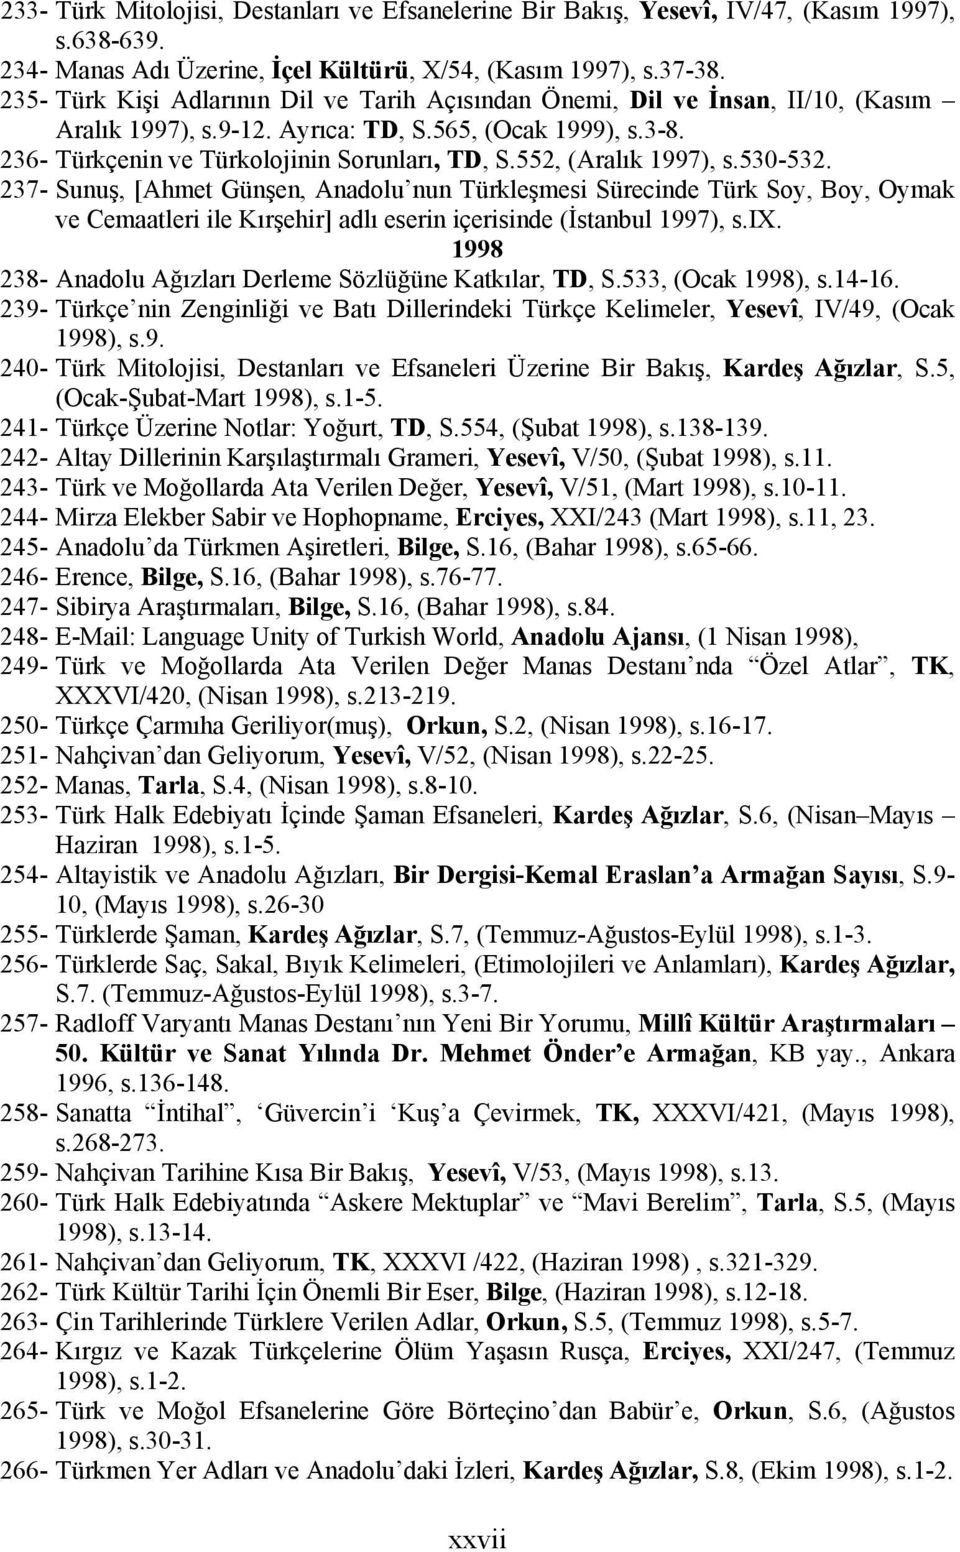 552, (Aralık 1997), s.530-532. 237- Sunuş, [Ahmet Günşen, Anadolu nun Türkleşmesi Sürecinde Türk Soy, Boy, Oymak ve Cemaatleri ile Kırşehir] adlı eserin içerisinde (İstanbul 1997), s.ix.